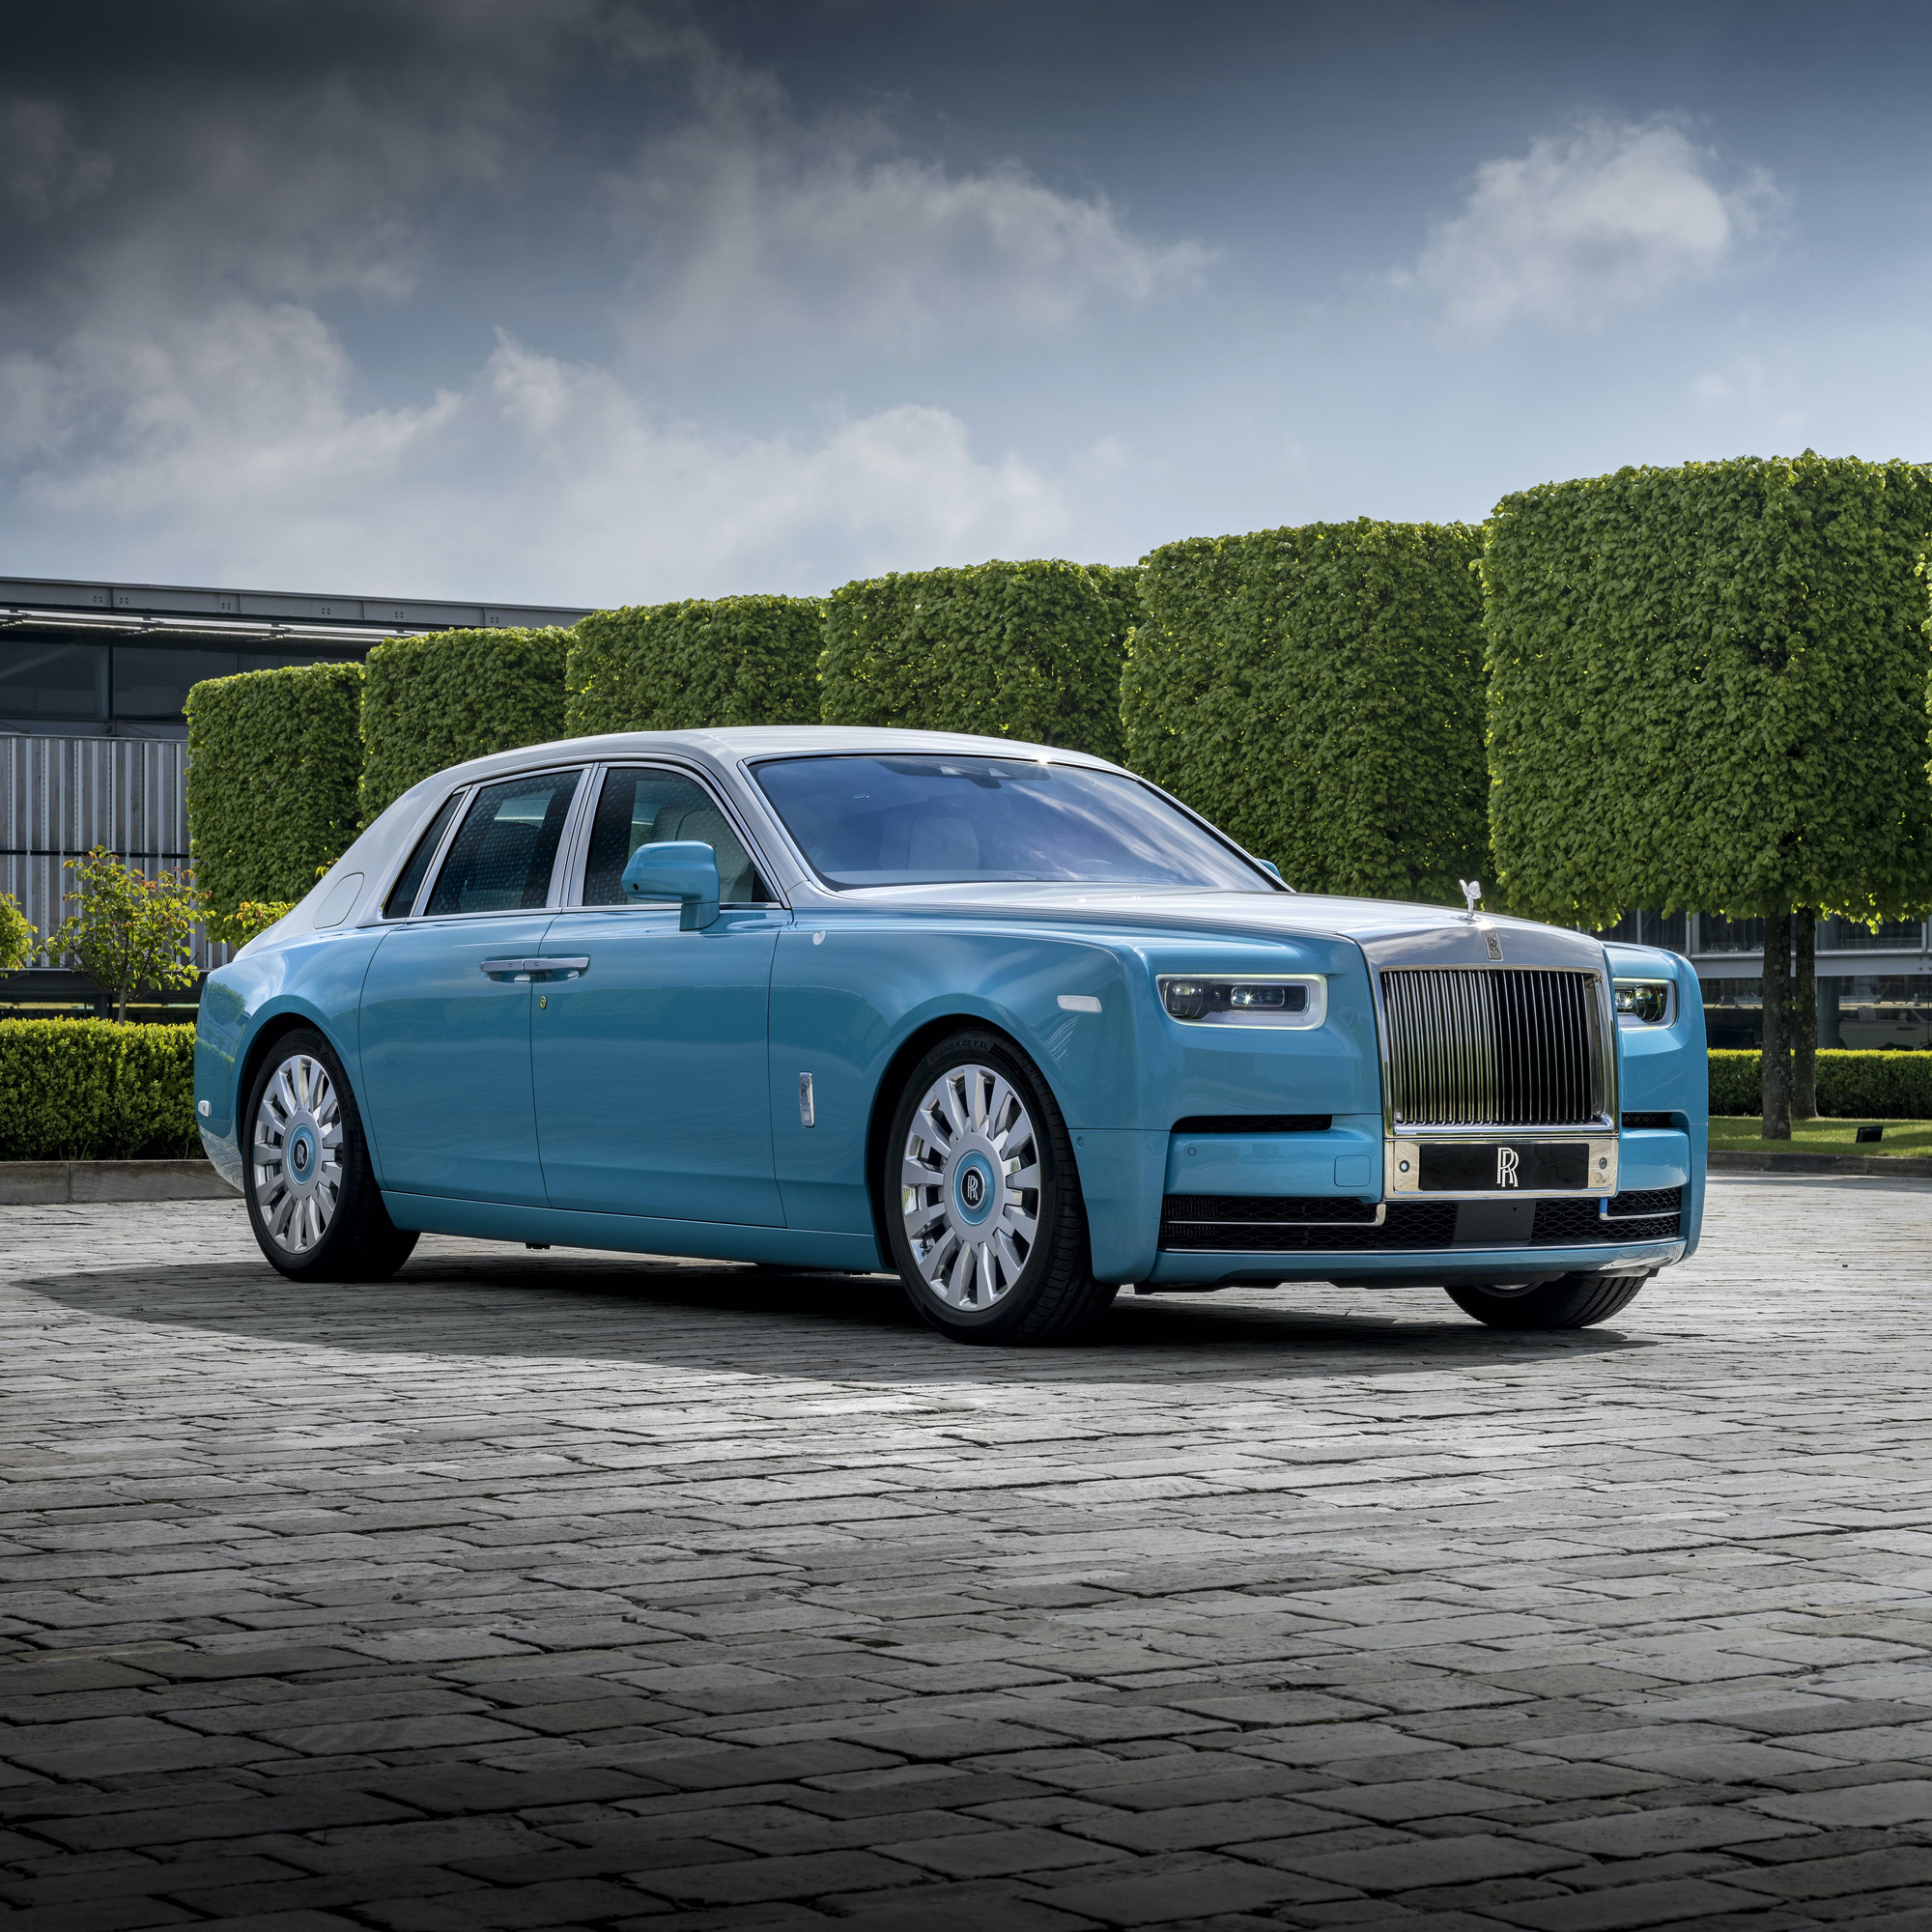 Chào mừng đến với thế giới của Rolls-Royce – thương hiệu ô tô sang trọng và đẳng cấp đã được biết đến trên toàn thế giới. Hãy cùng tìm hiểu về giá xe sang trọng này và nhận ra giá trị thực sự mà nó mang lại.